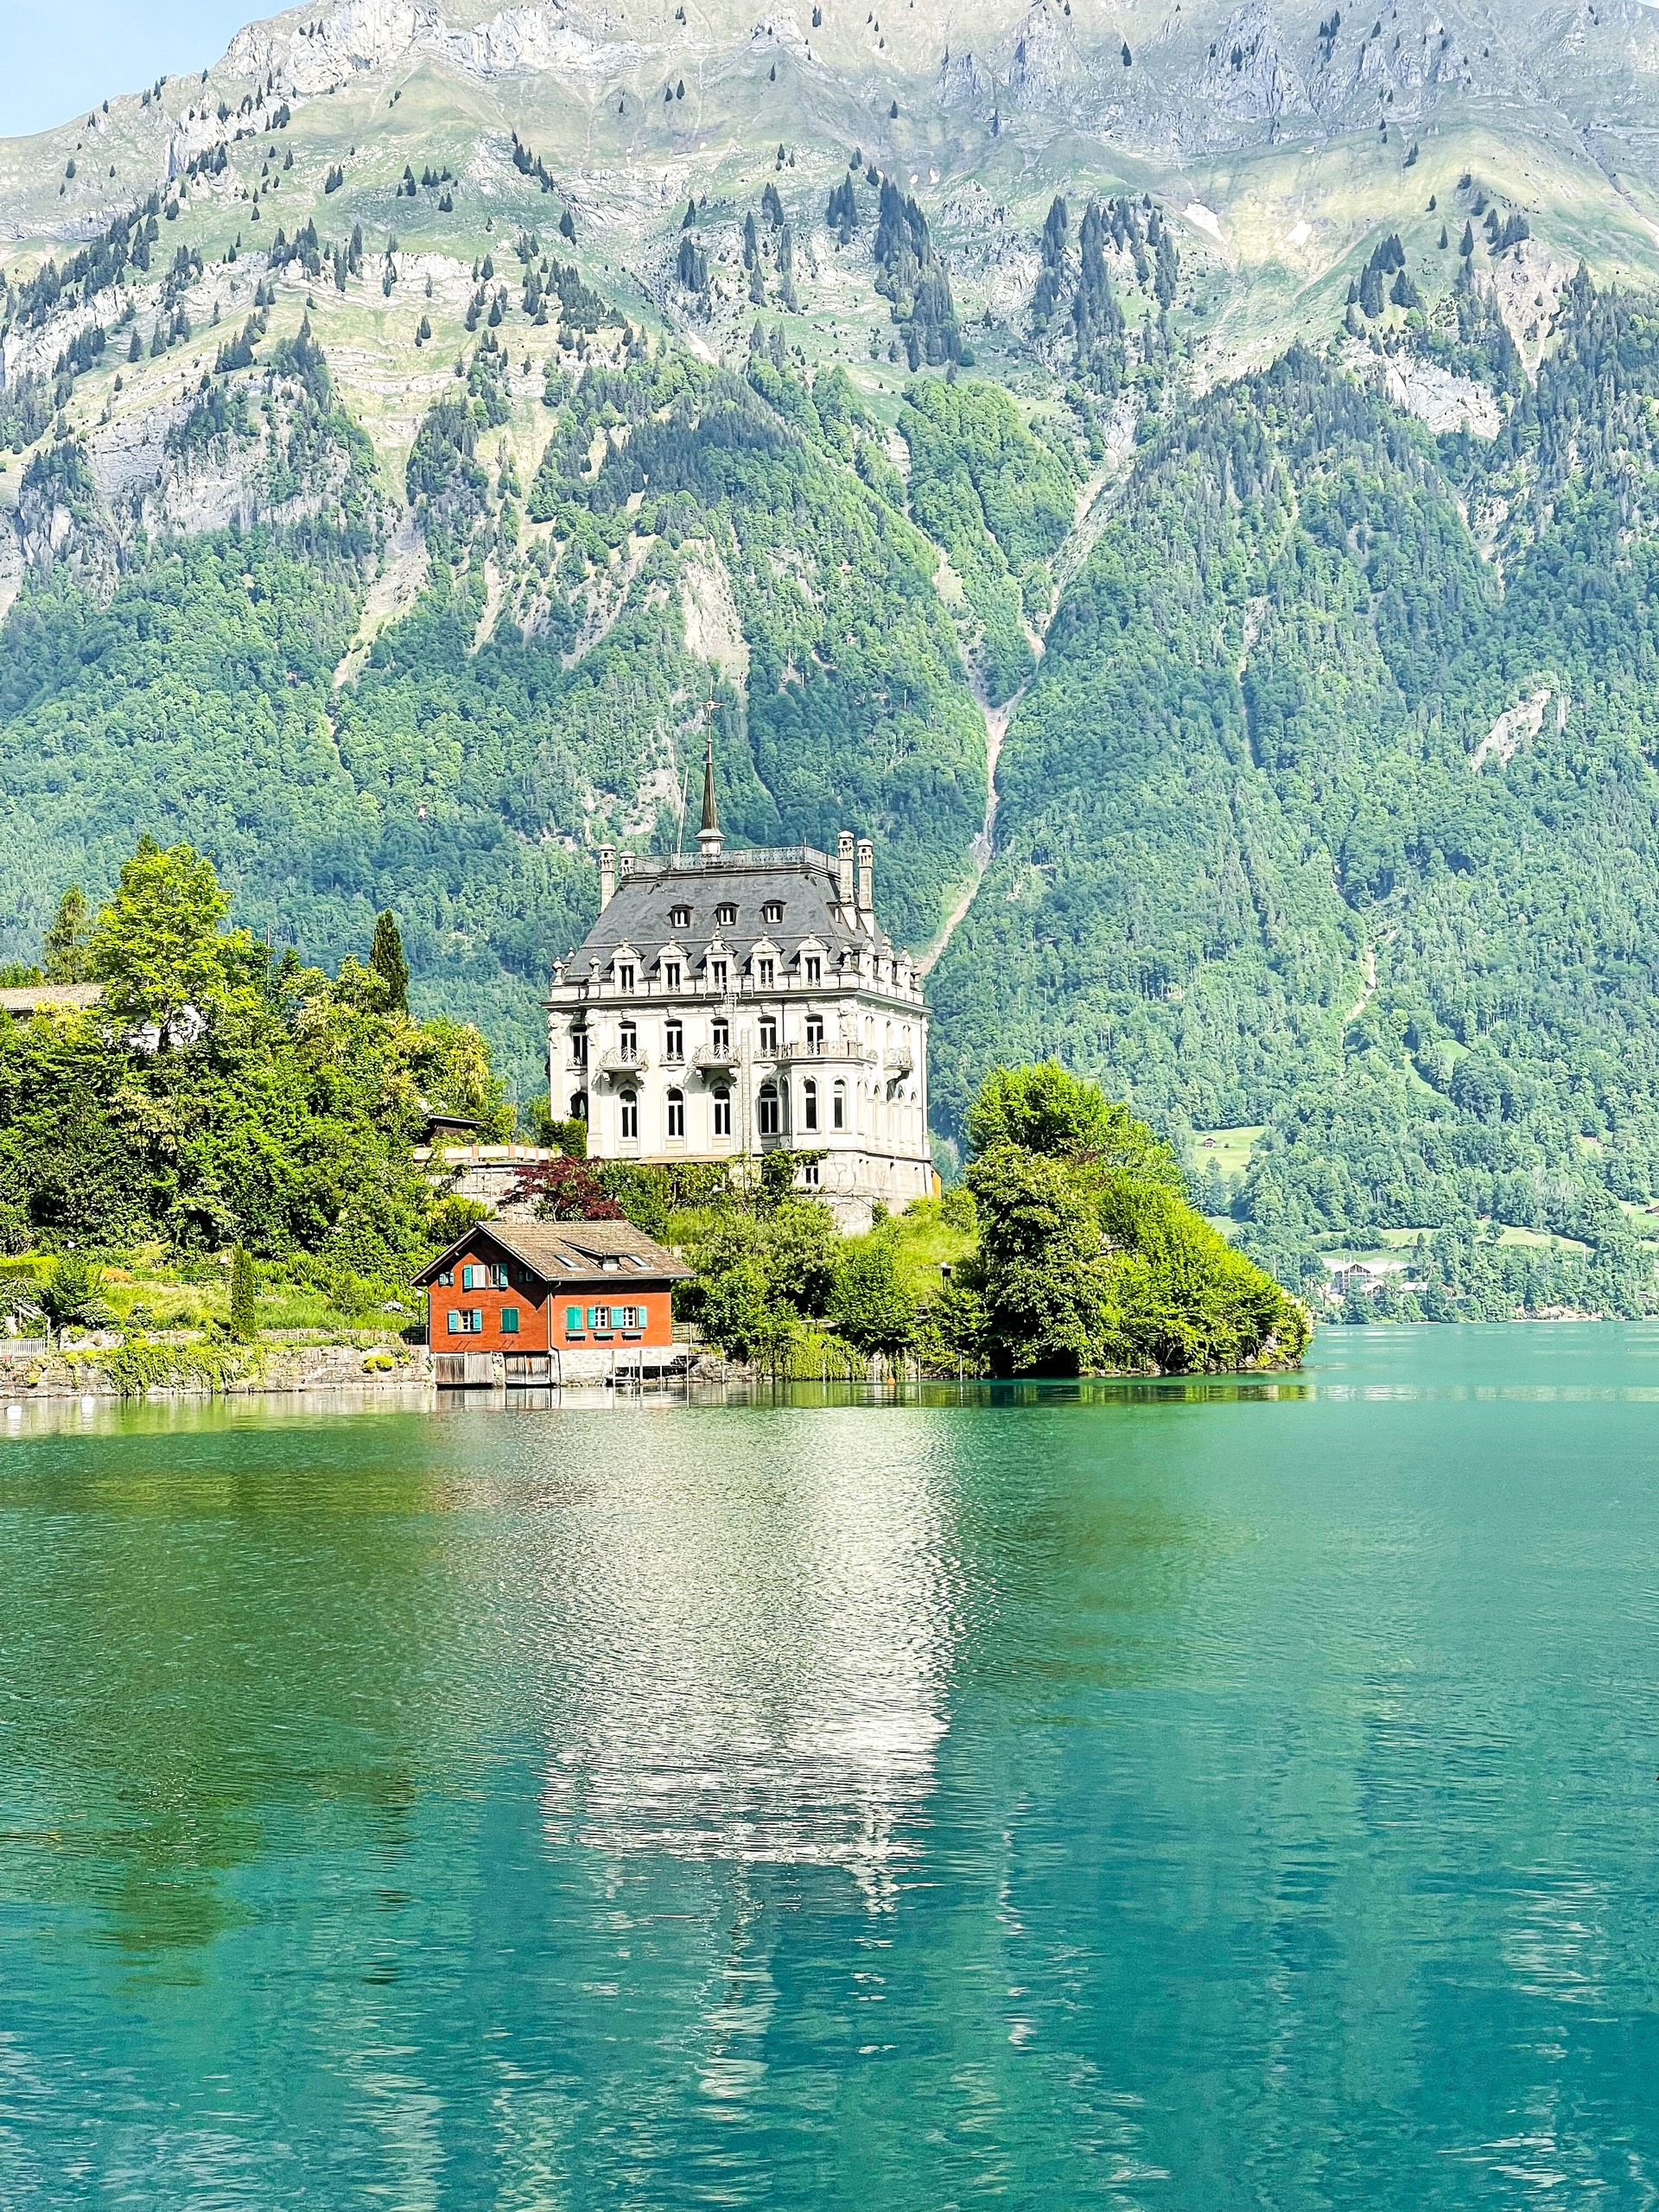 Ngôi làng nhỏ dân số chỉ khoảng 400 người, đẹp nức tiếng ở Thụy Sĩ tới mức được ví là “siêu thực” - Ảnh 3.